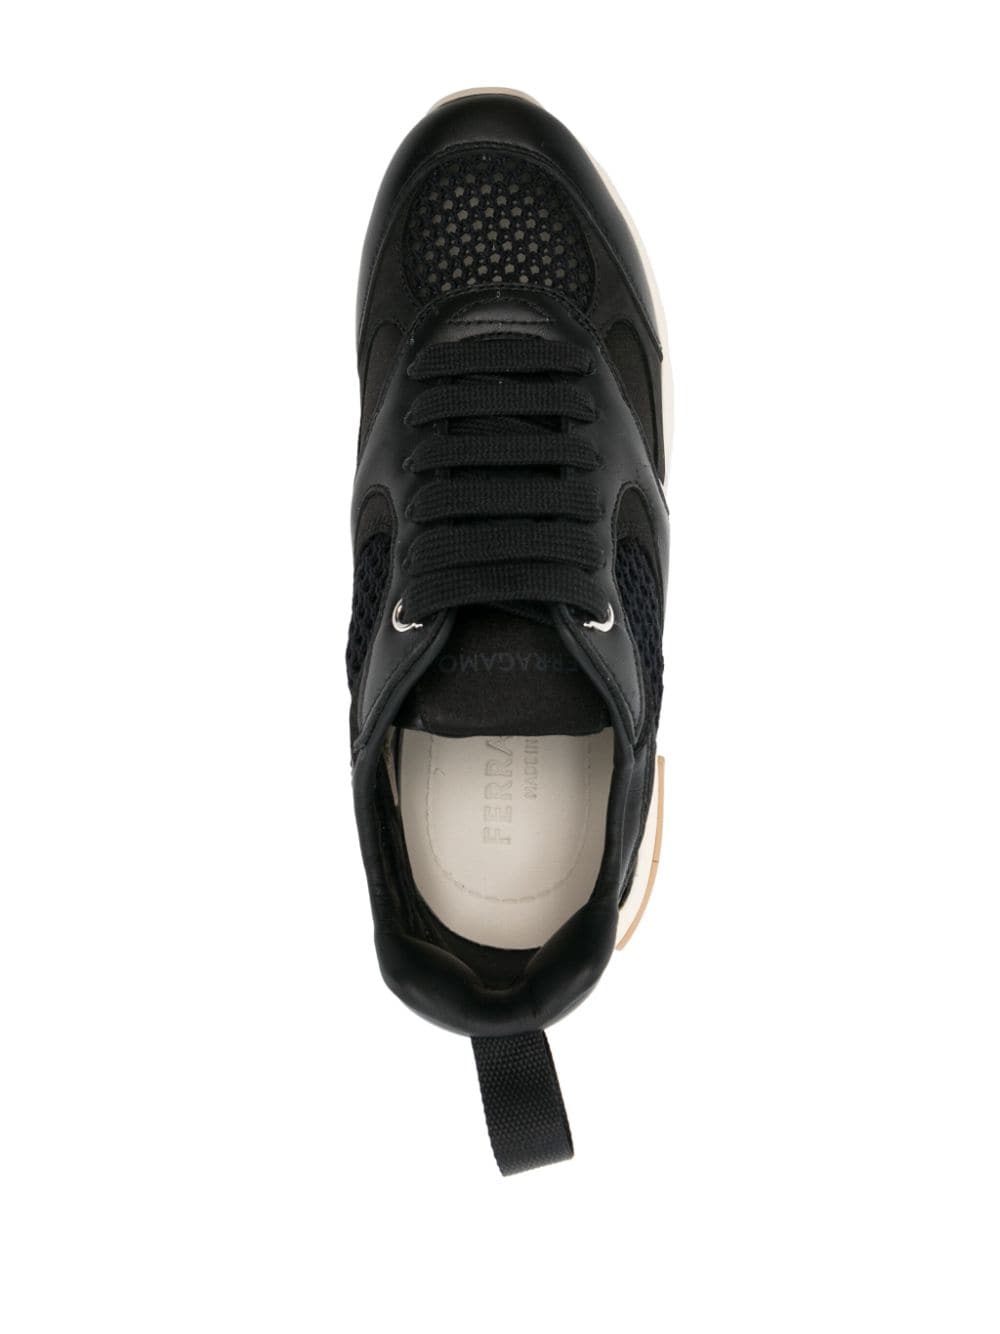 Black Leather Almond-Toe Sneakers for Women by Ferragamo